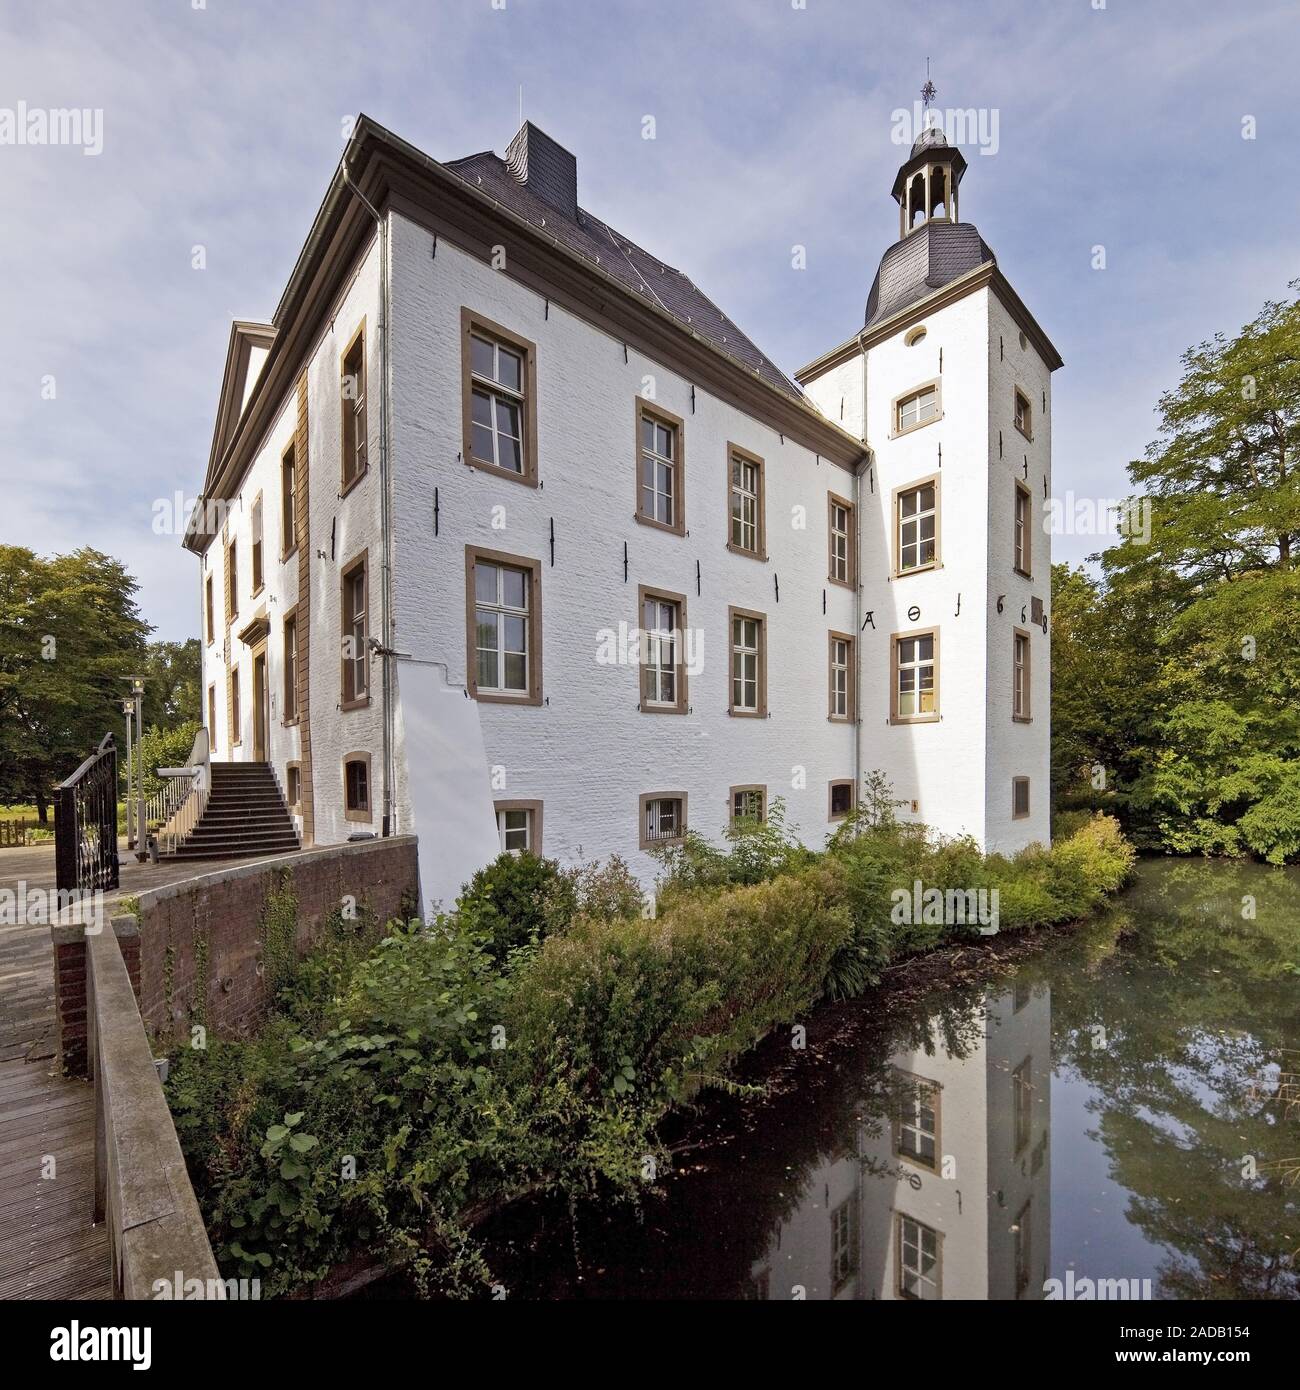 Haus Voerde in Lower Rhine region, Voerde, Ruhr area, North Rhine-Westphalia, Germany, Europe Stock Photo